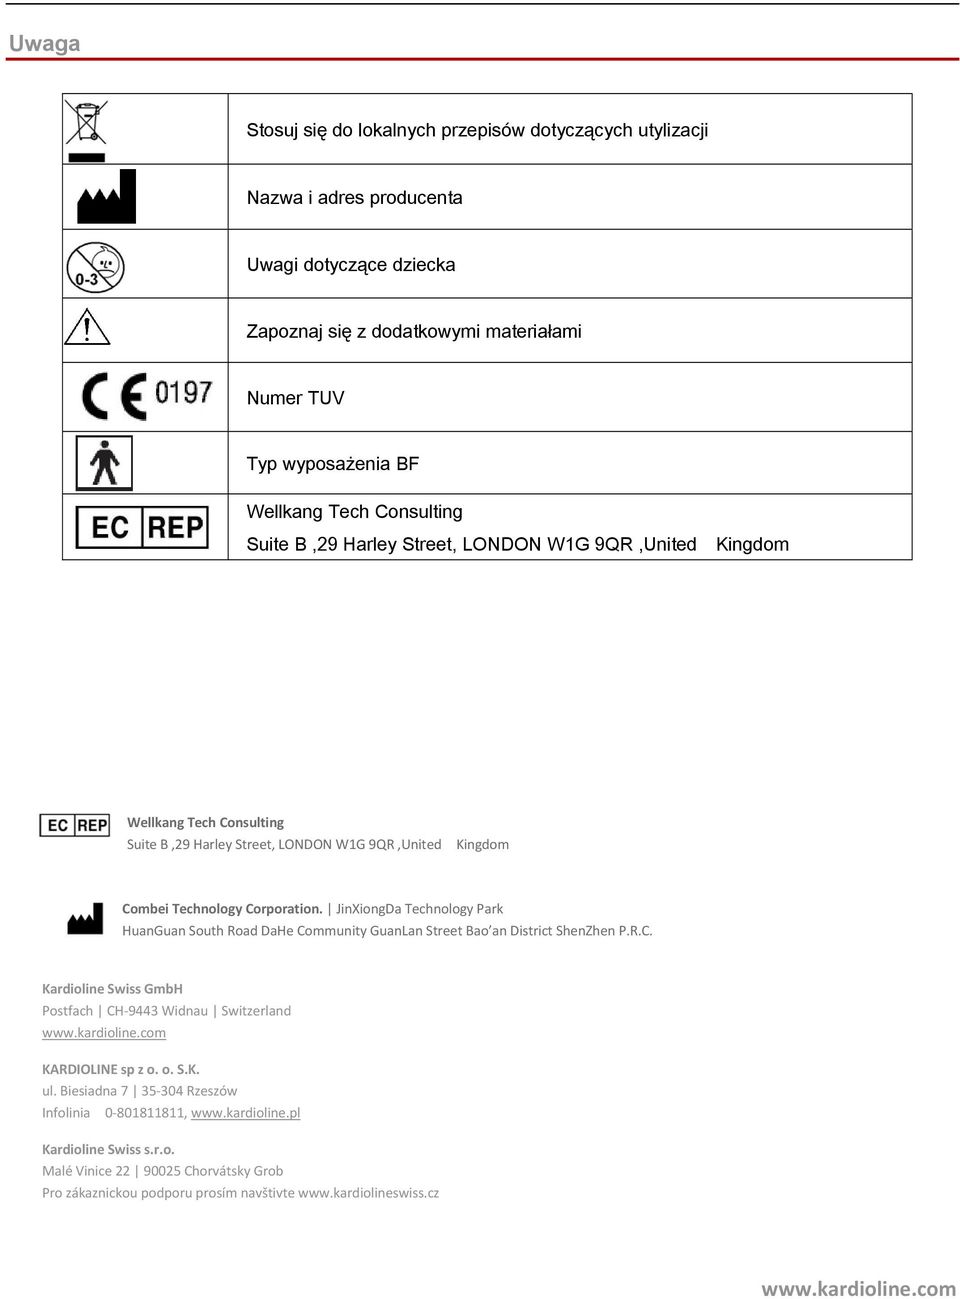 KL80 - Bezdotykowy termometr na podczerwień Instrukcja obsługi PL - PDF  Free Download